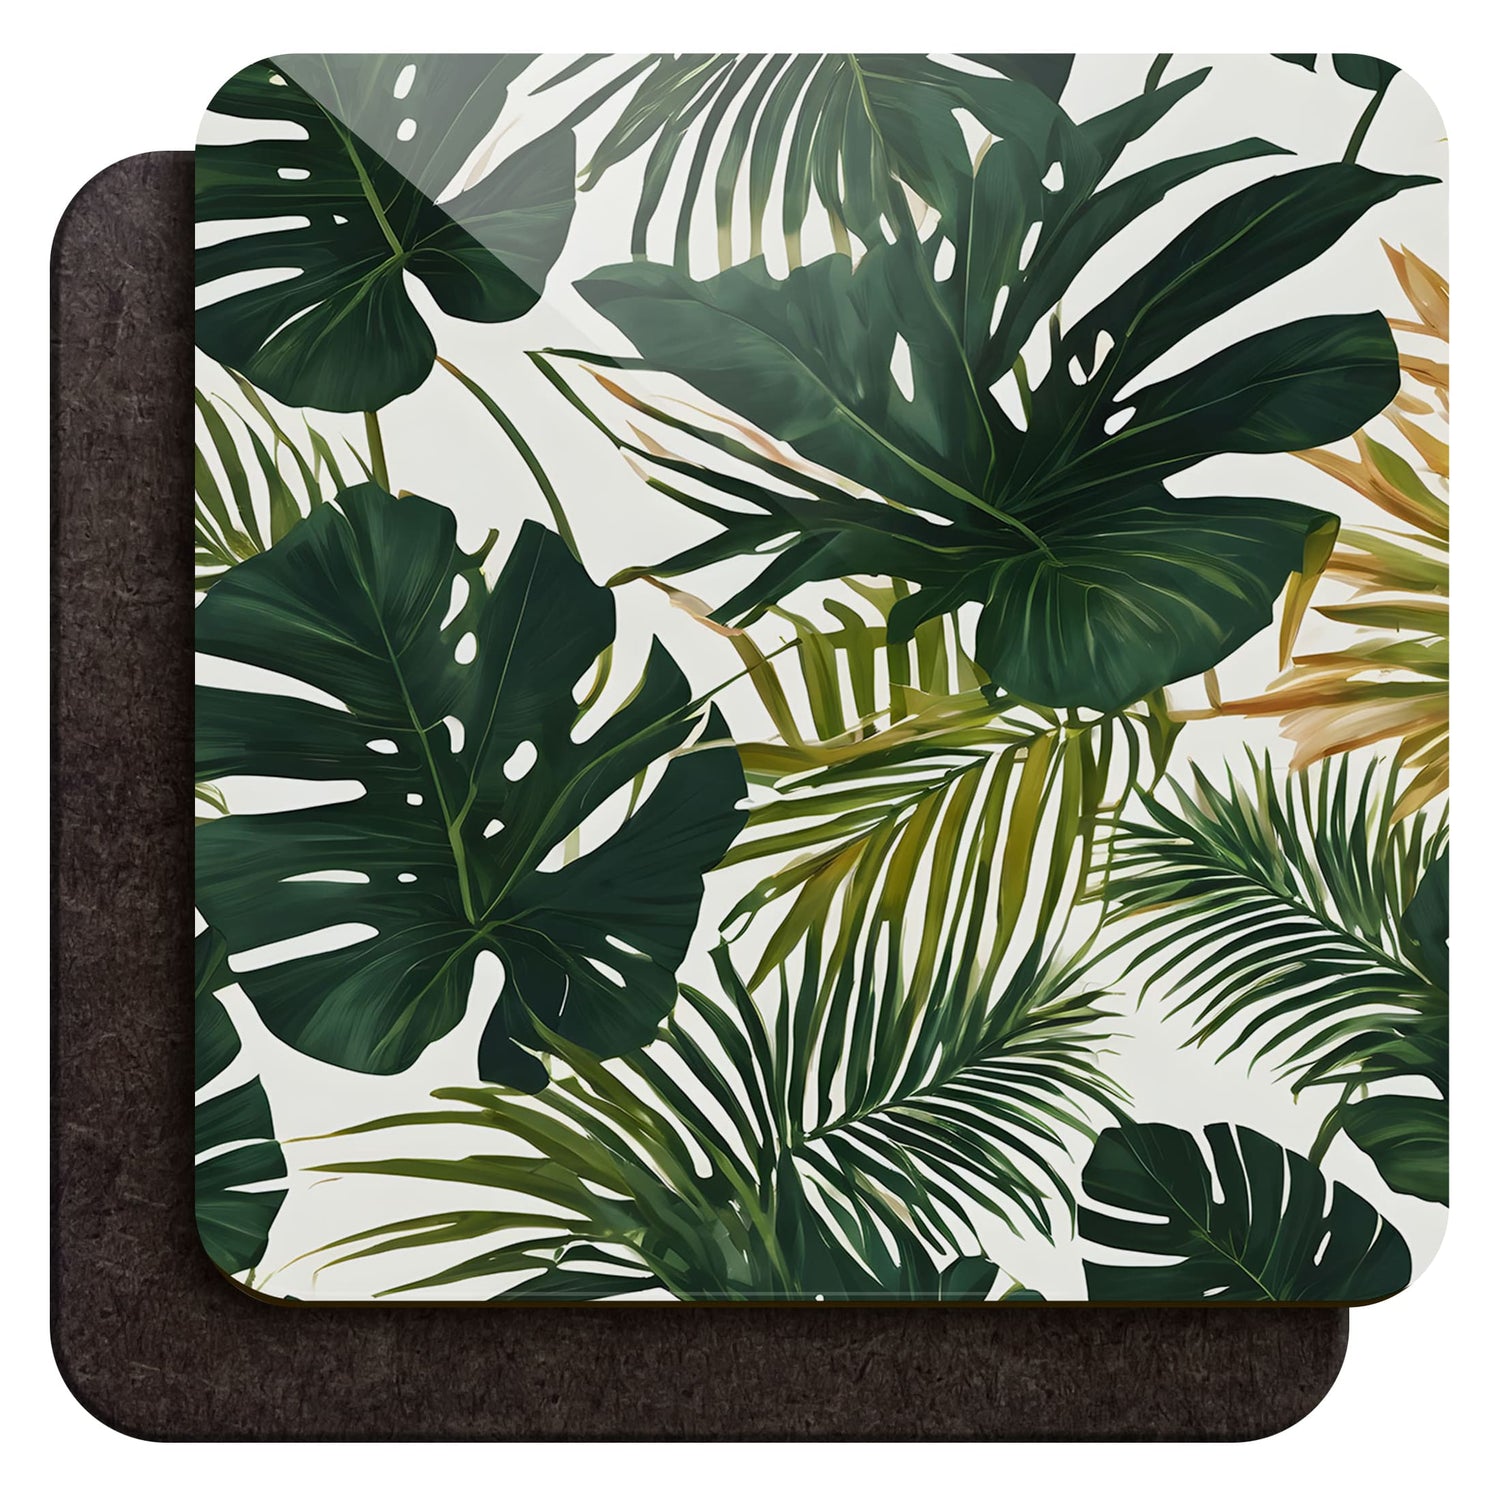 Tropical Palm Leaf Print Coaster Set Palm Leaves Coaster